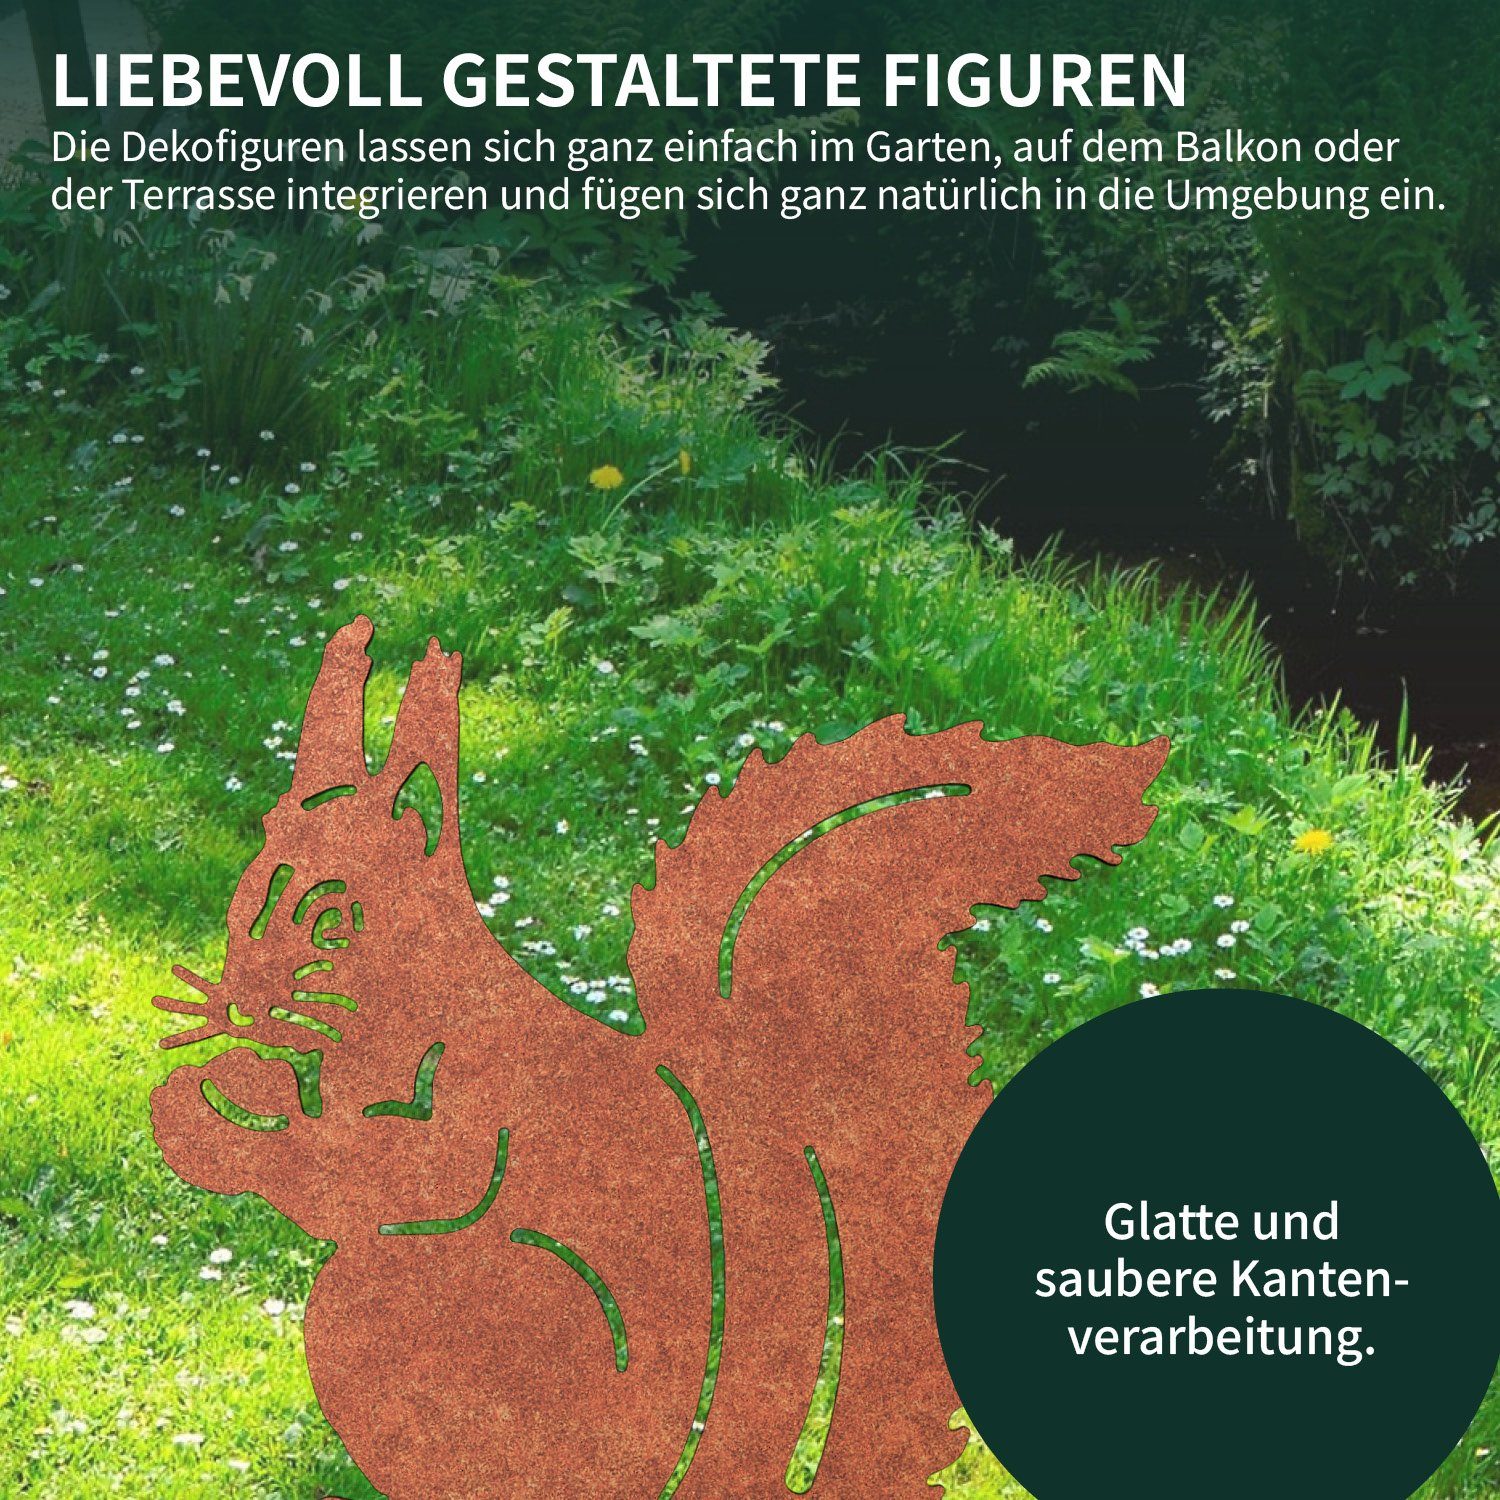 VERDOBA Gartenfigur Gartenstecker in Designs Blumenstecker Rost, Eichhörnchen verschiedenen (silber)